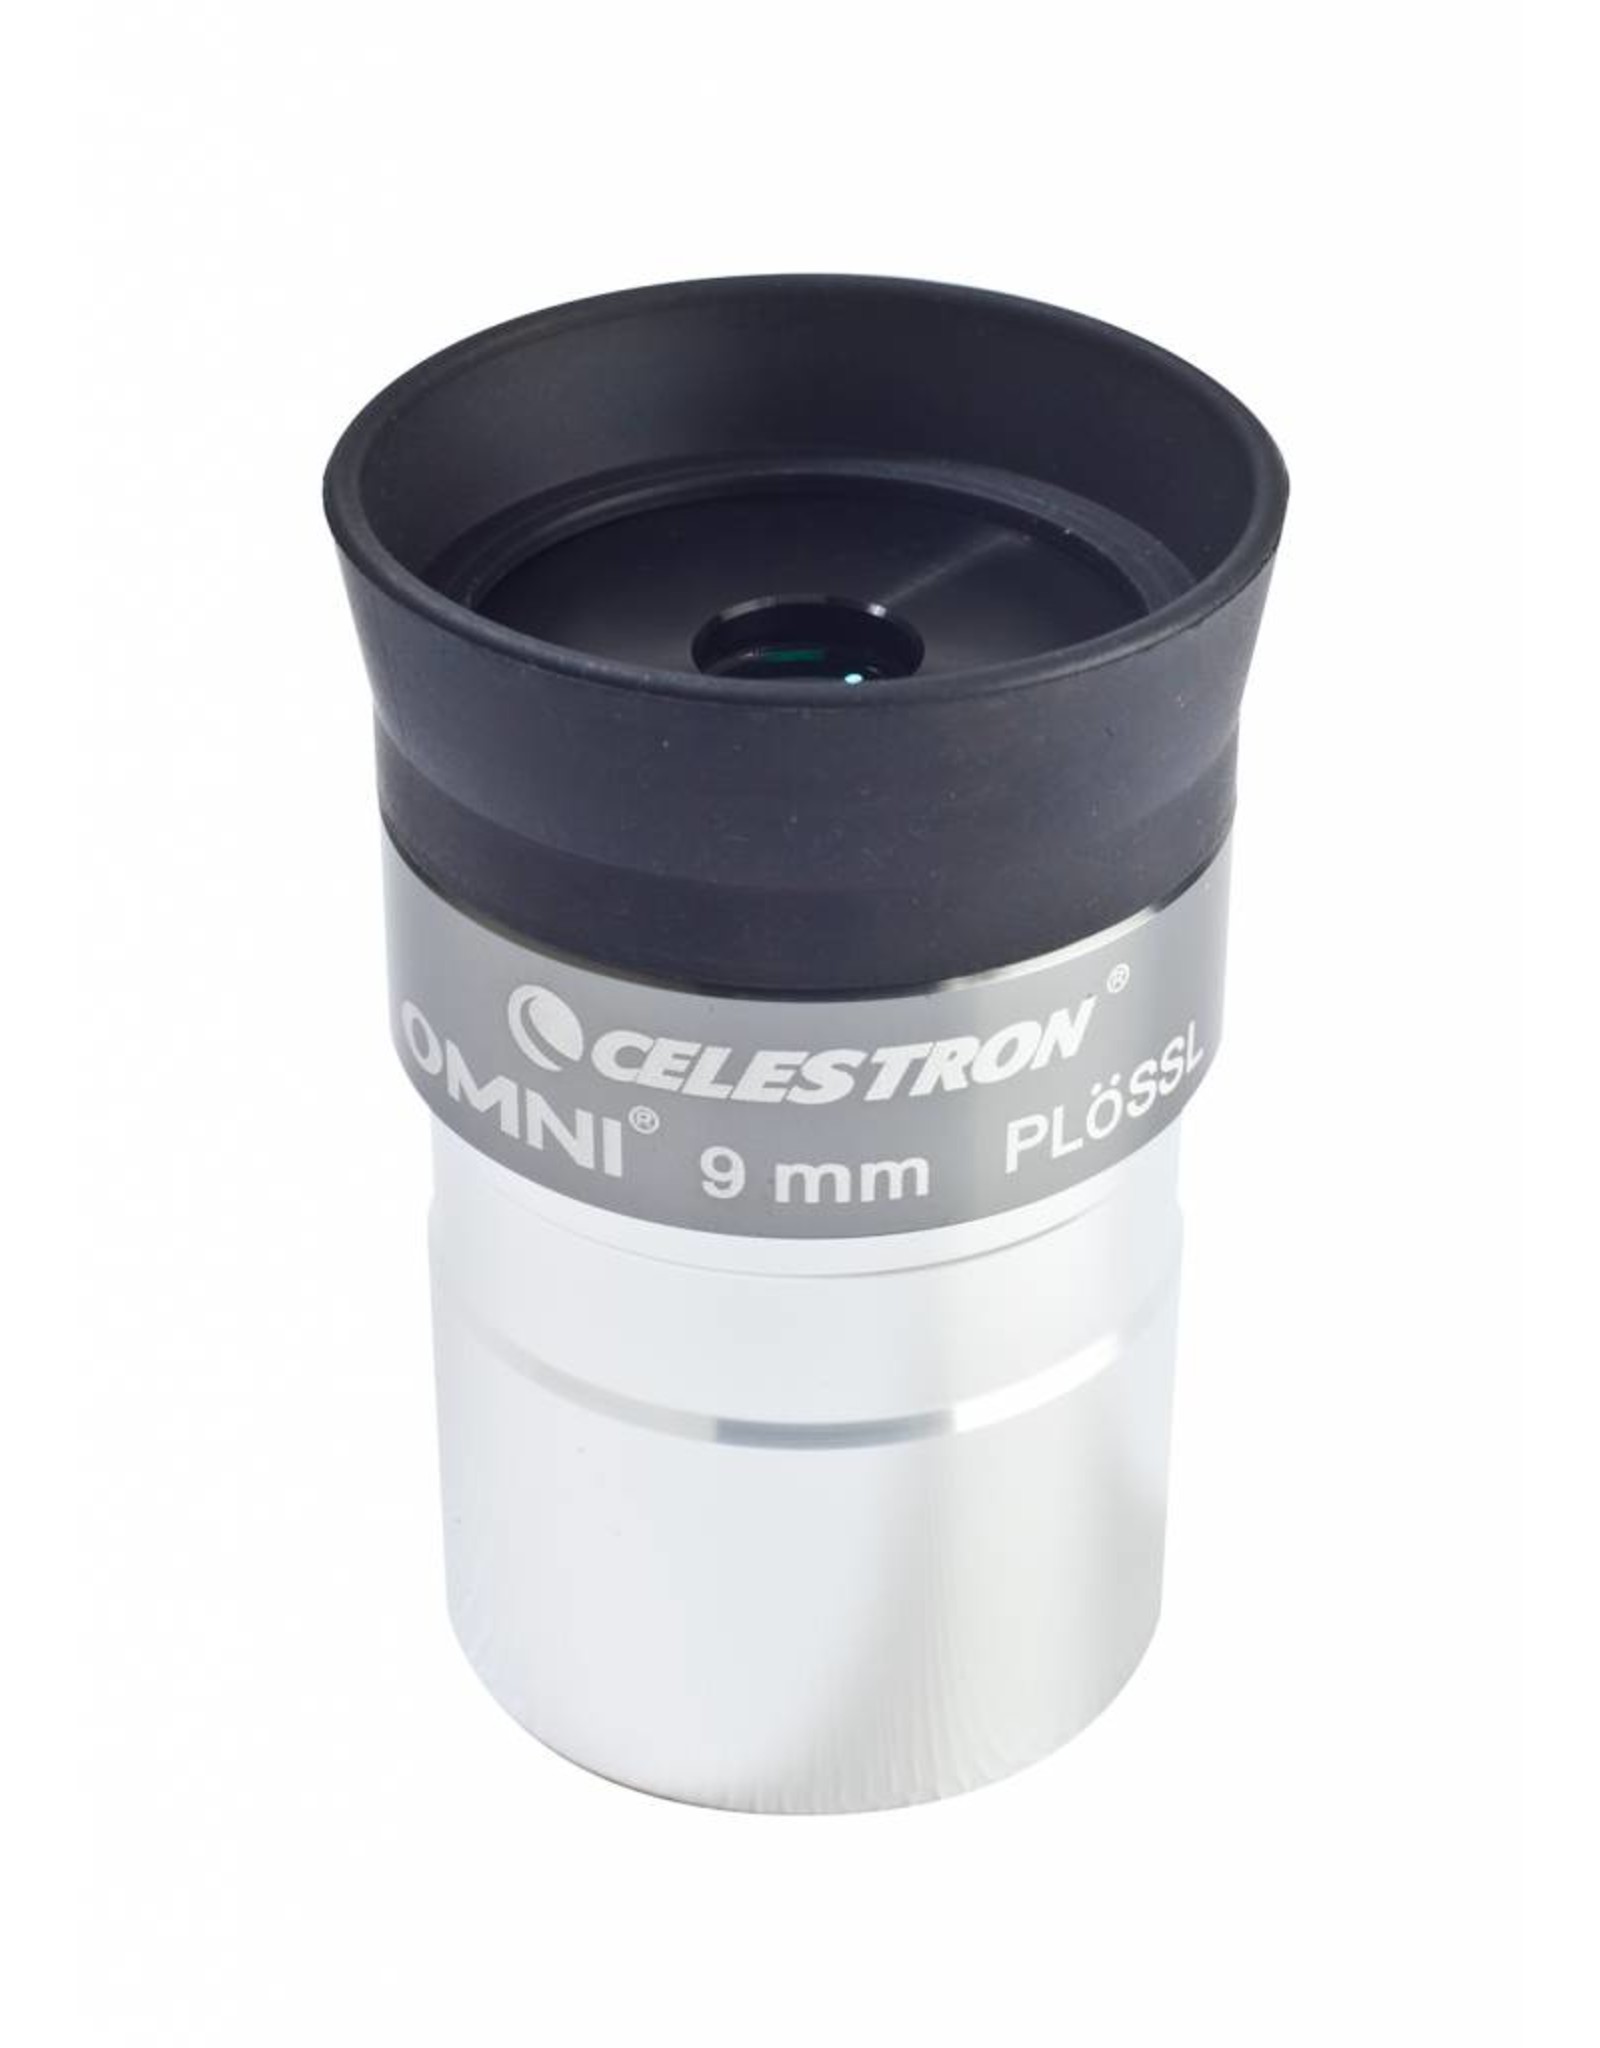 Celestron Celestron Omni Series 1.25 in - 9mm